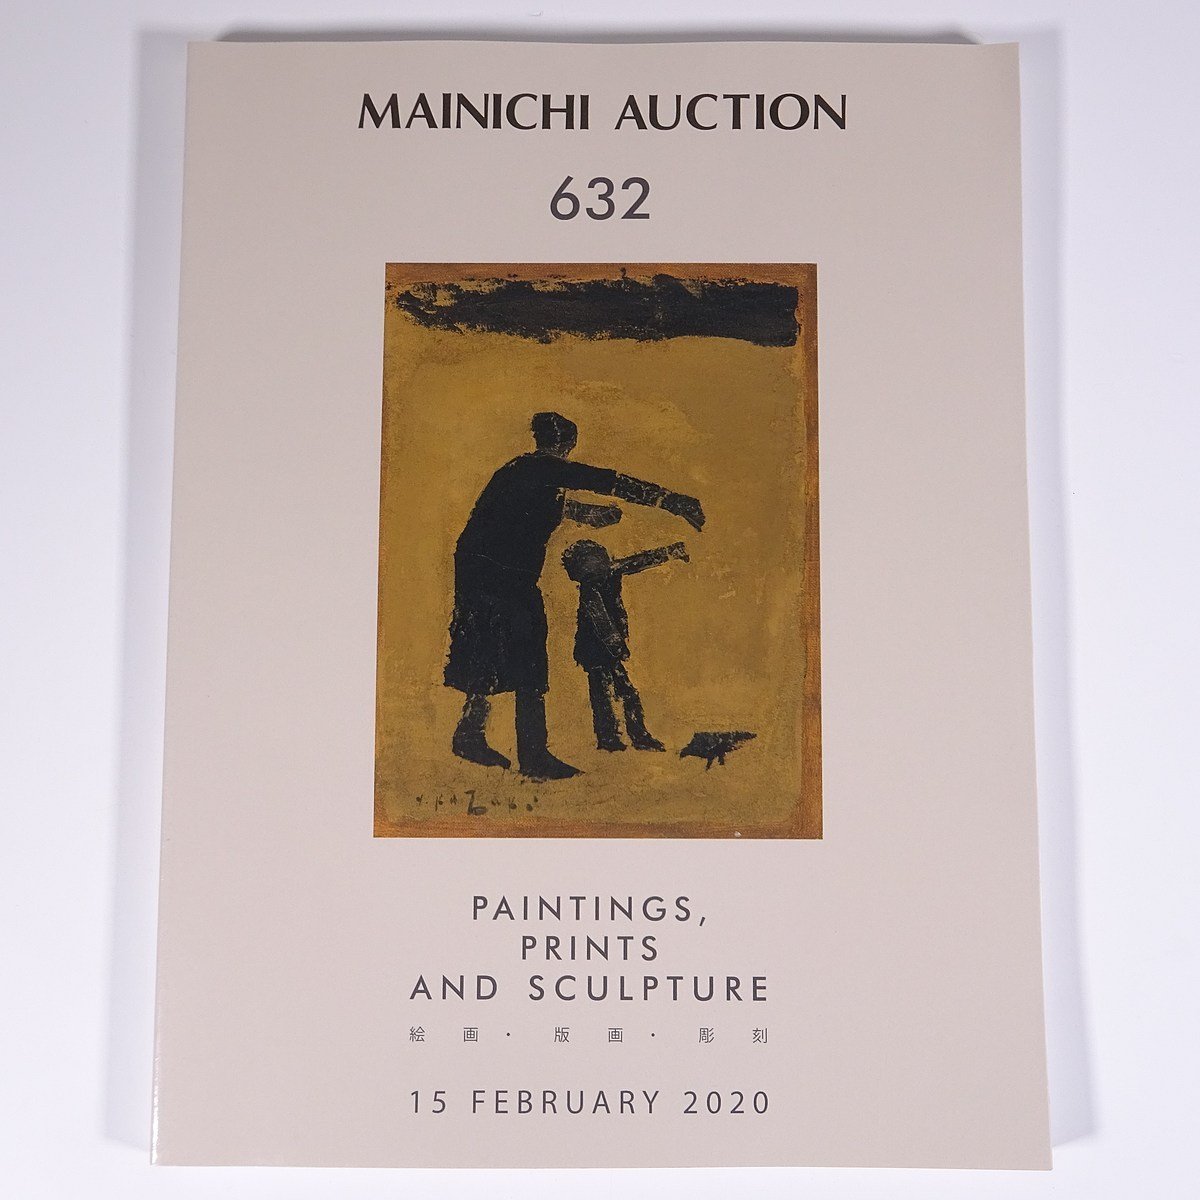 मेनिची नीलामी 632 पेंटिंग्स, प्रिंटों, और मूर्तियां 2020/2/15 मैनिची नीलामी बड़ी किताबें नीलामी सूची सूची कला ललित कला, चित्रकारी, कला पुस्तक, संग्रह, सूची